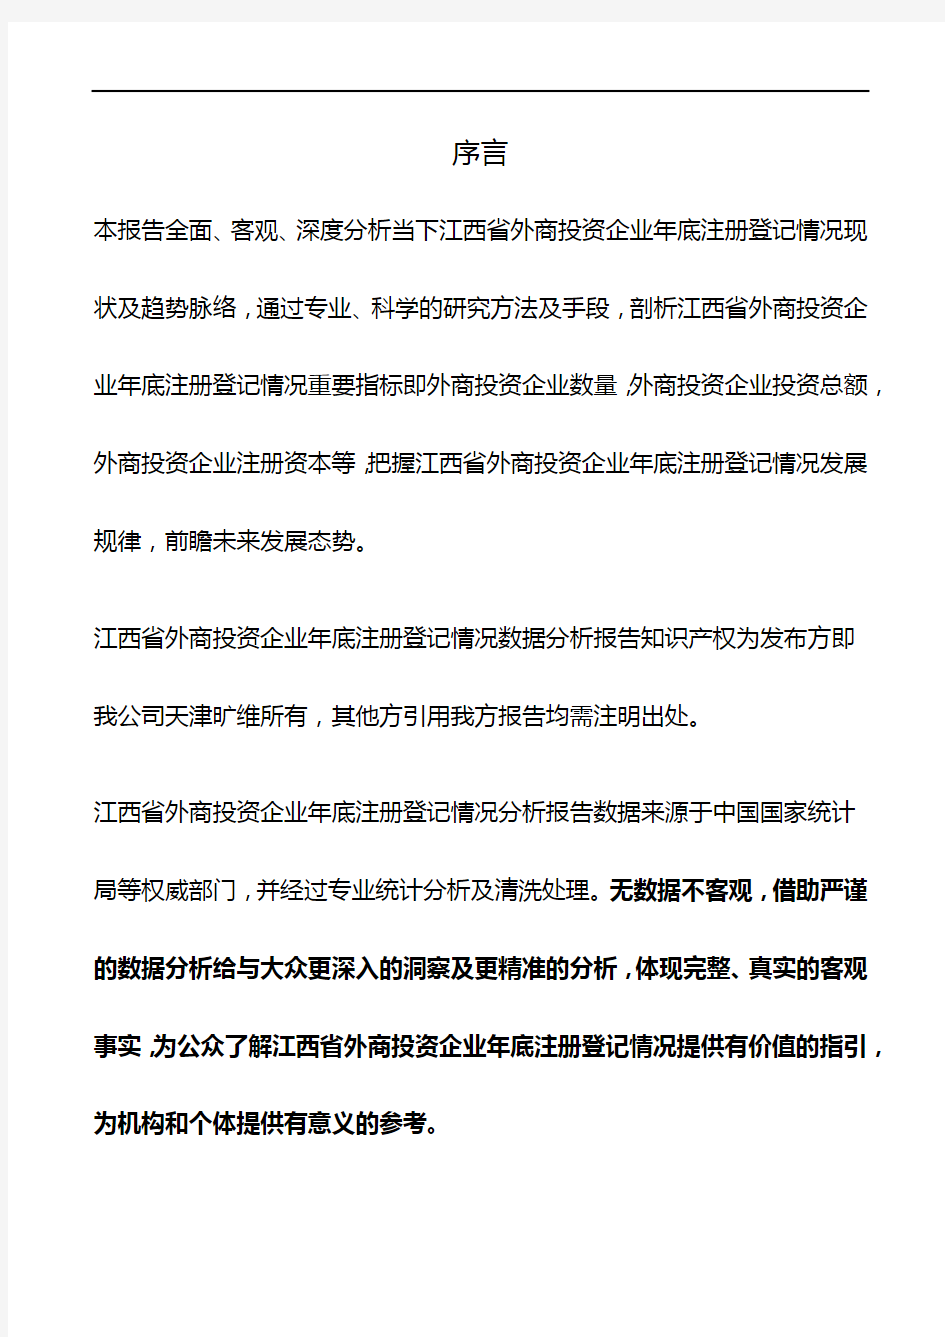 江西省外商投资企业年底注册登记情况数据分析报告2019版